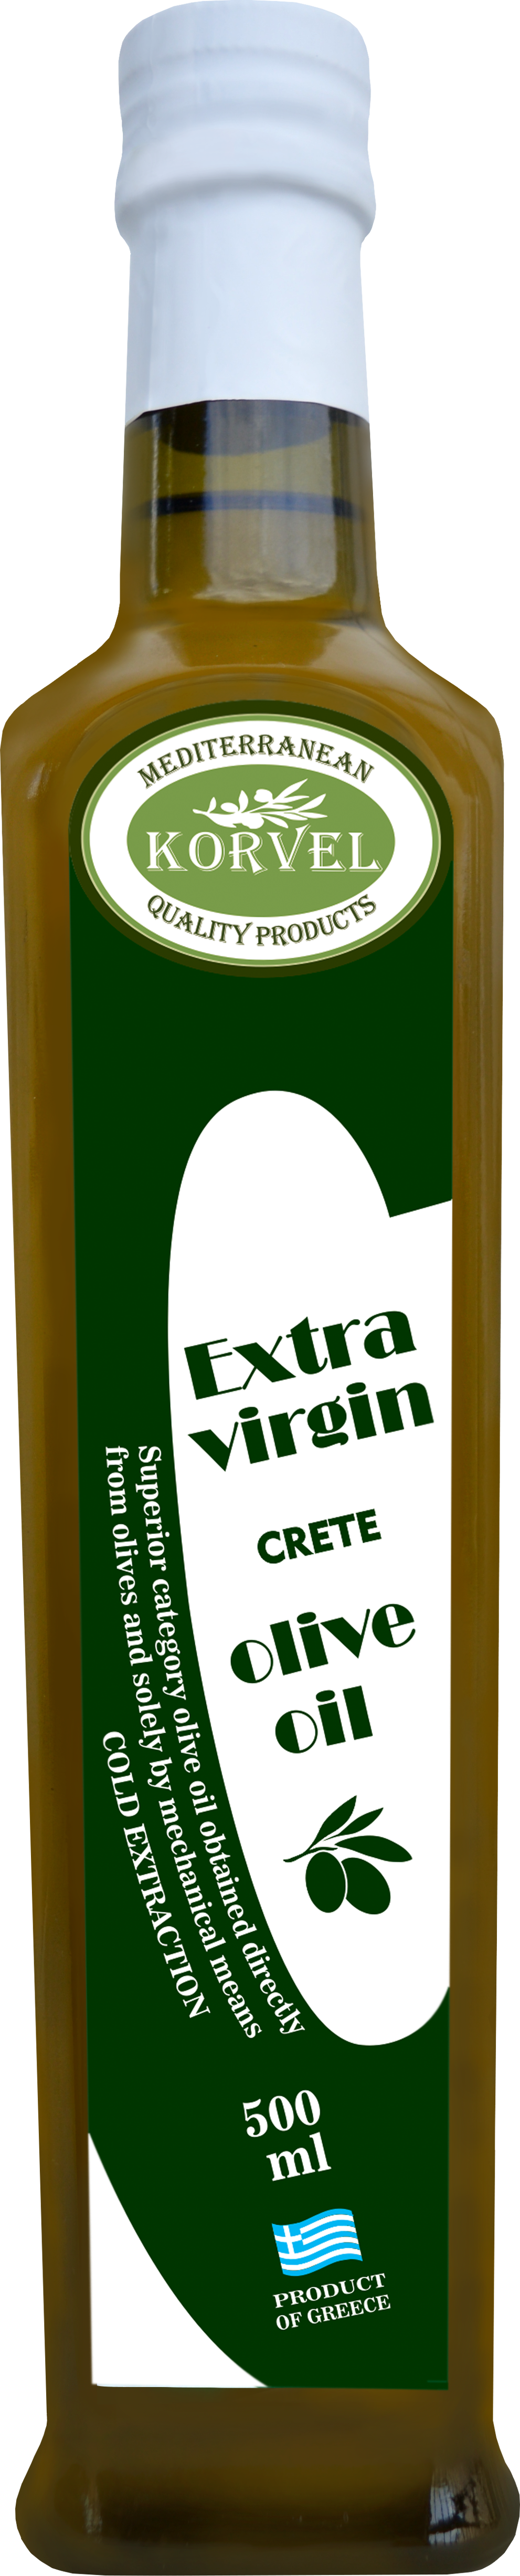 фото Оливковое масло korvel extra virgin крит стеклянная бутылка 500 мл